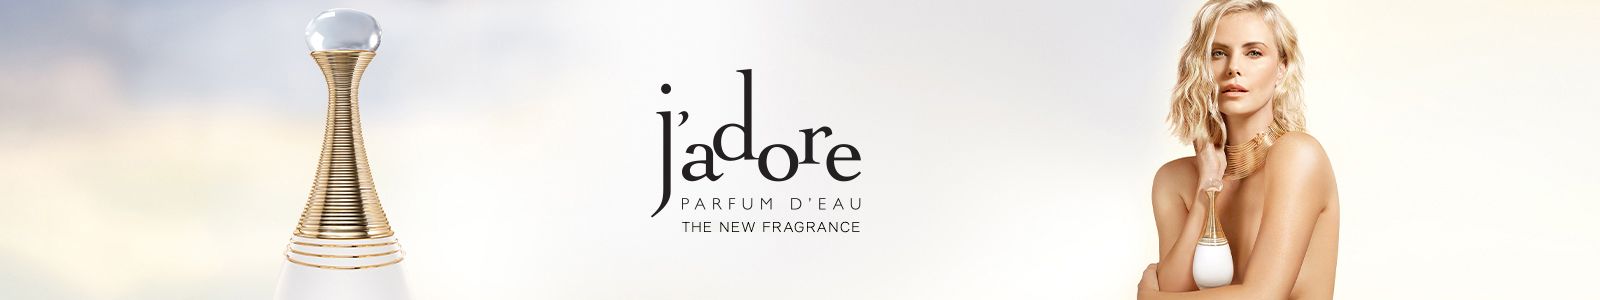 Jadore, Parfum D'eau, The New Fragrance